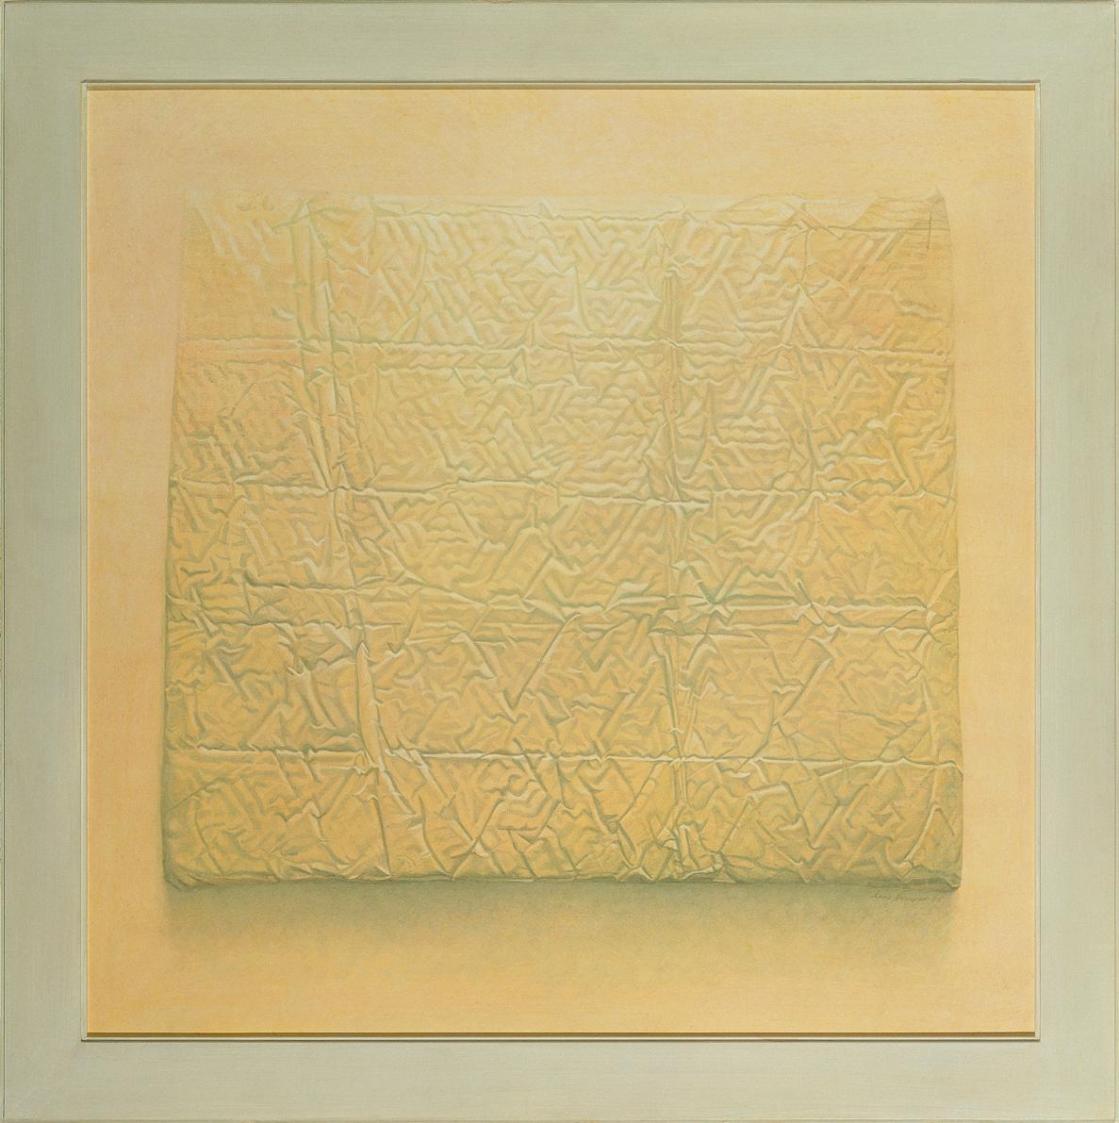 Anne Hauser, Verpackt I, 1995, Acryl, Öl auf Holz, 90 x 90 cm, Belvedere, Wien, Inv.-Nr. 9672